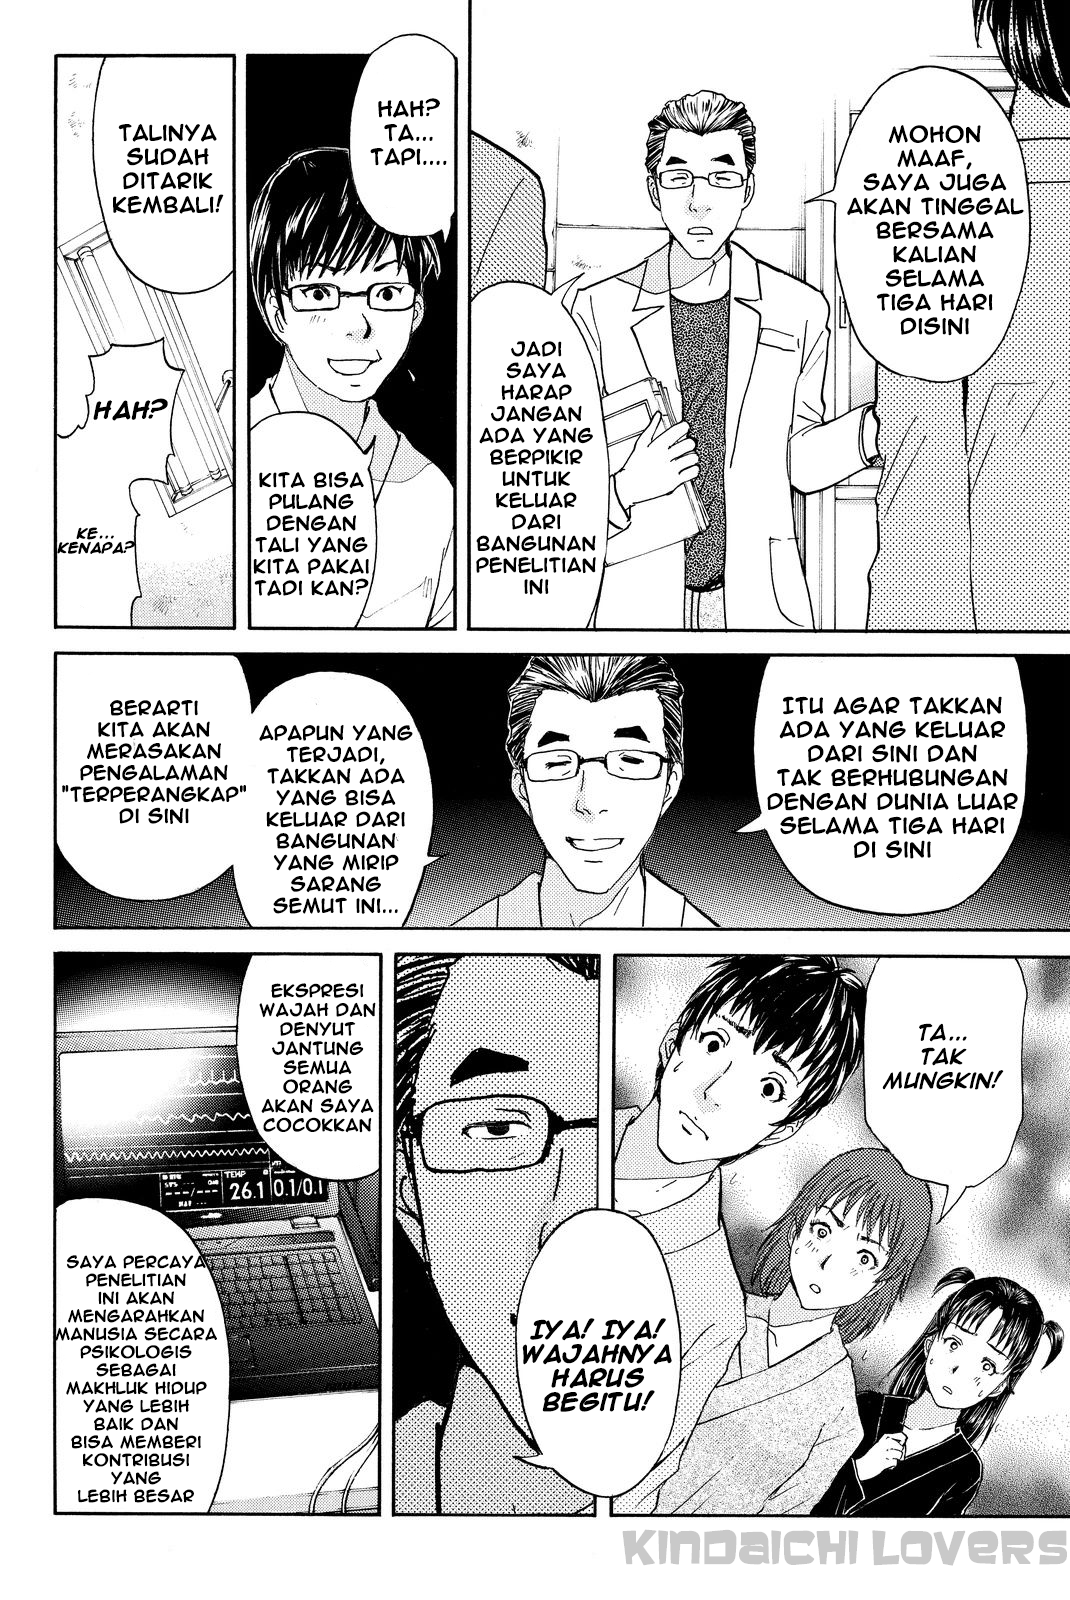 Kindaichi Shounen no Jikenbo R Chapter 39